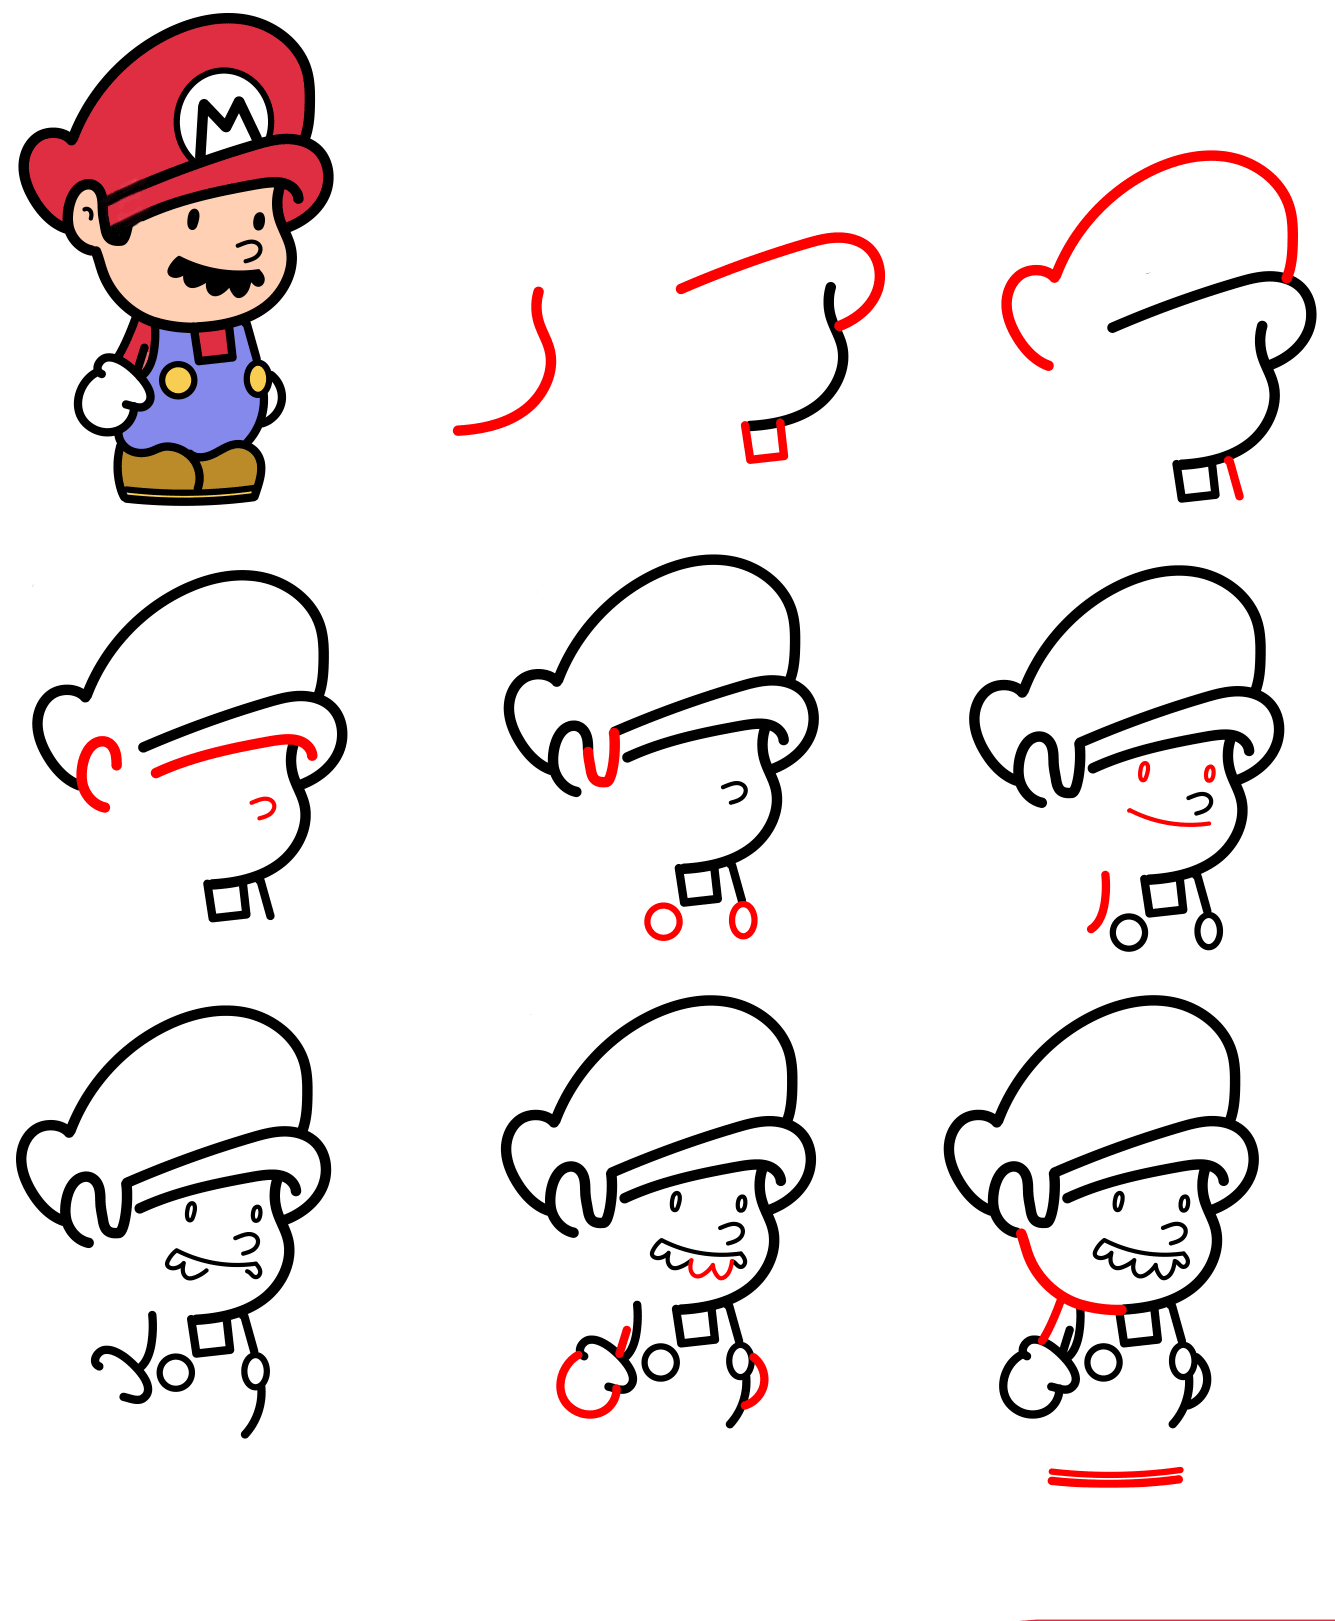 Süßer Mario zeichnen ideen